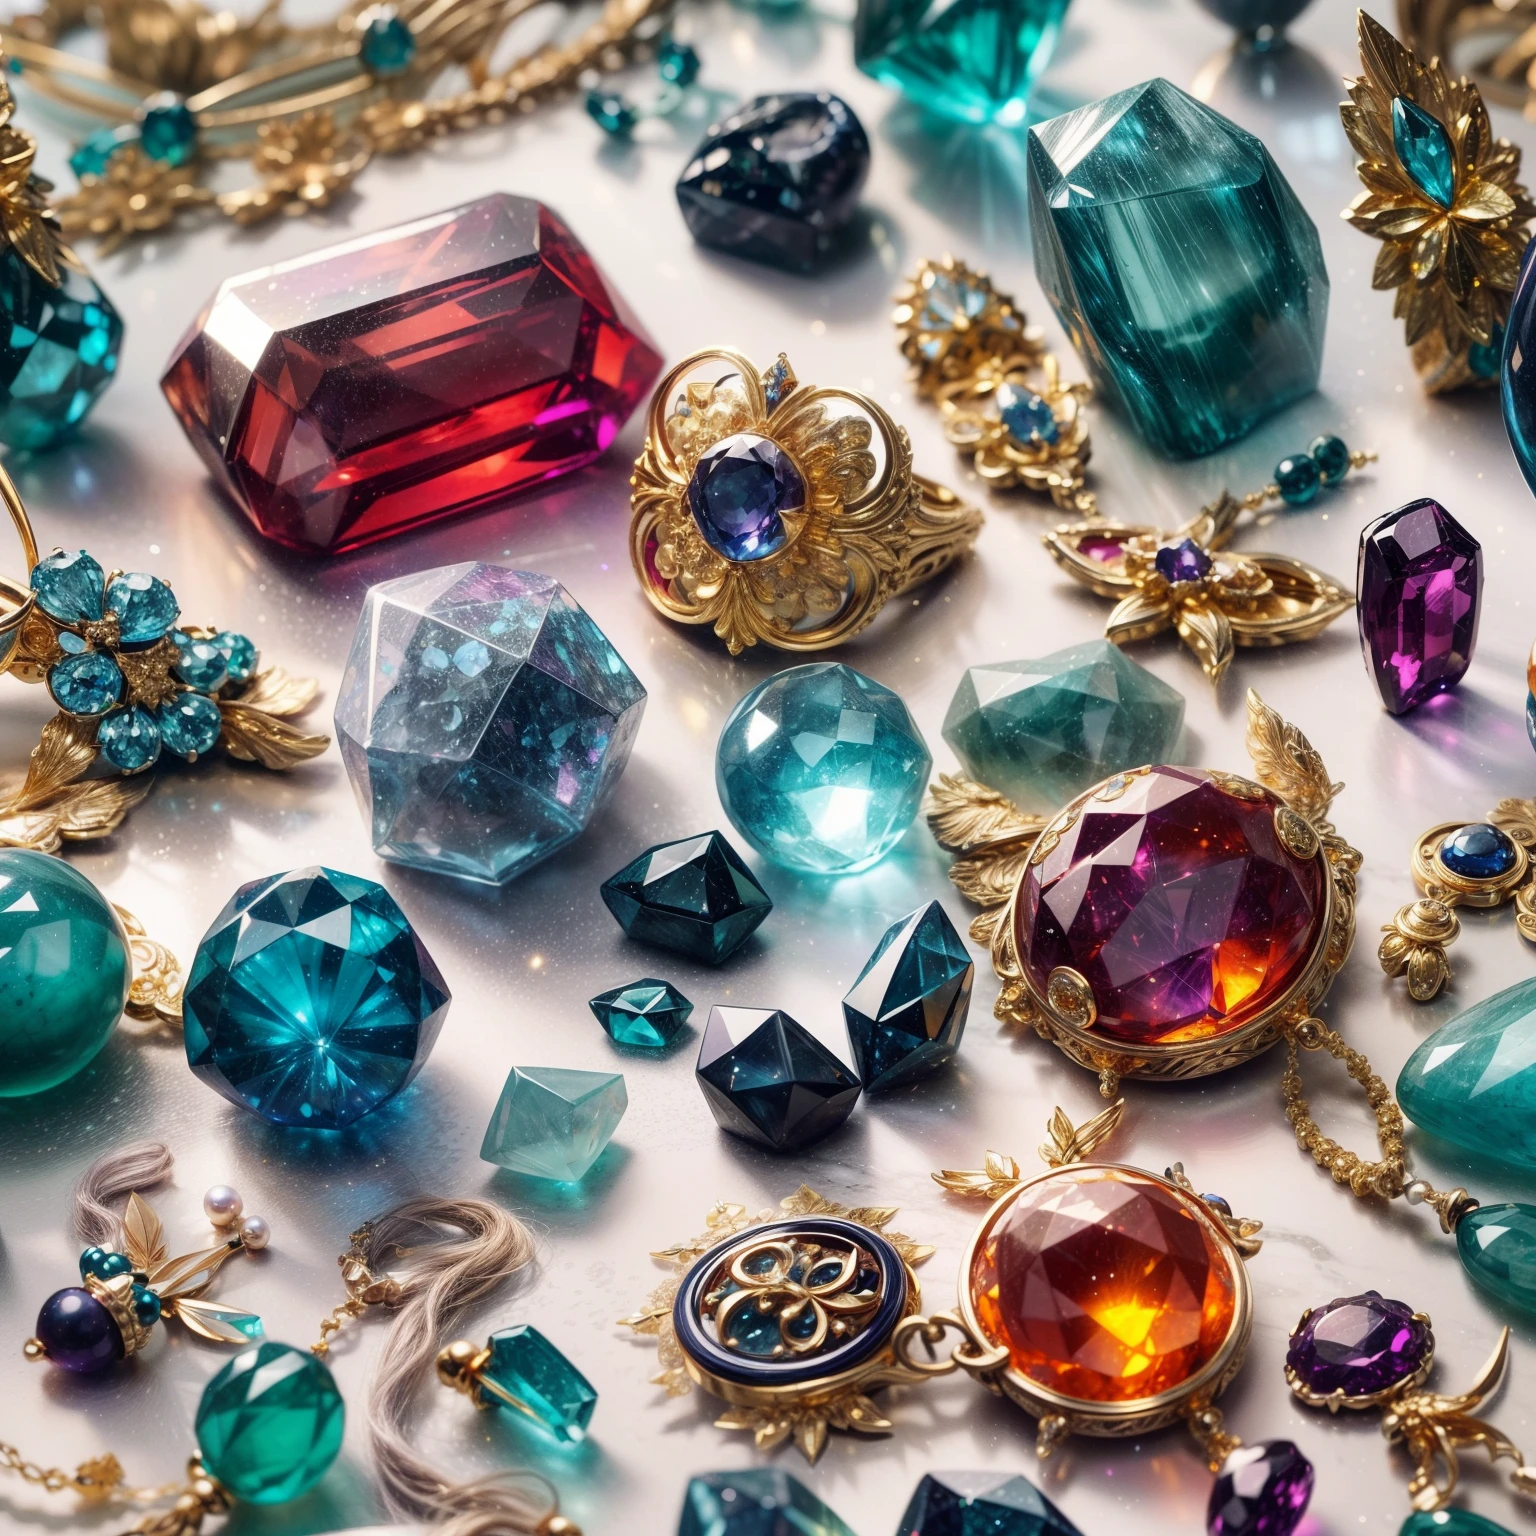 (德鲁伊风格:1.2)，(全焦:2),(所有东西都摆放在展示柜里:1.3)，(魔法物品|彩色宝石|樱花|印花丝绸产品|勋章|矿石|黑曜石|珍珠|翡翠|白玉|紫晶|蓝宝石|黄金产品|银制品|紫金|神奇的珠宝|古玩|红宝石|橙色宝石|蓝色宝石|黄玉|:2)，魔法符号光粒子效果，高科技奢华， 高价值珠宝,，高价值金属，奢侈品，禁止玩拼图, 详细而复杂的背景, 闪闪发光的, 反射光, 超高清, 获奖, 高分辨率, 高细节, 明暗对比, 电影灯光, 杰作, 射线追踪，结构正确, 超级细节, 高质量, 高细节s, 最好的质量, 16千